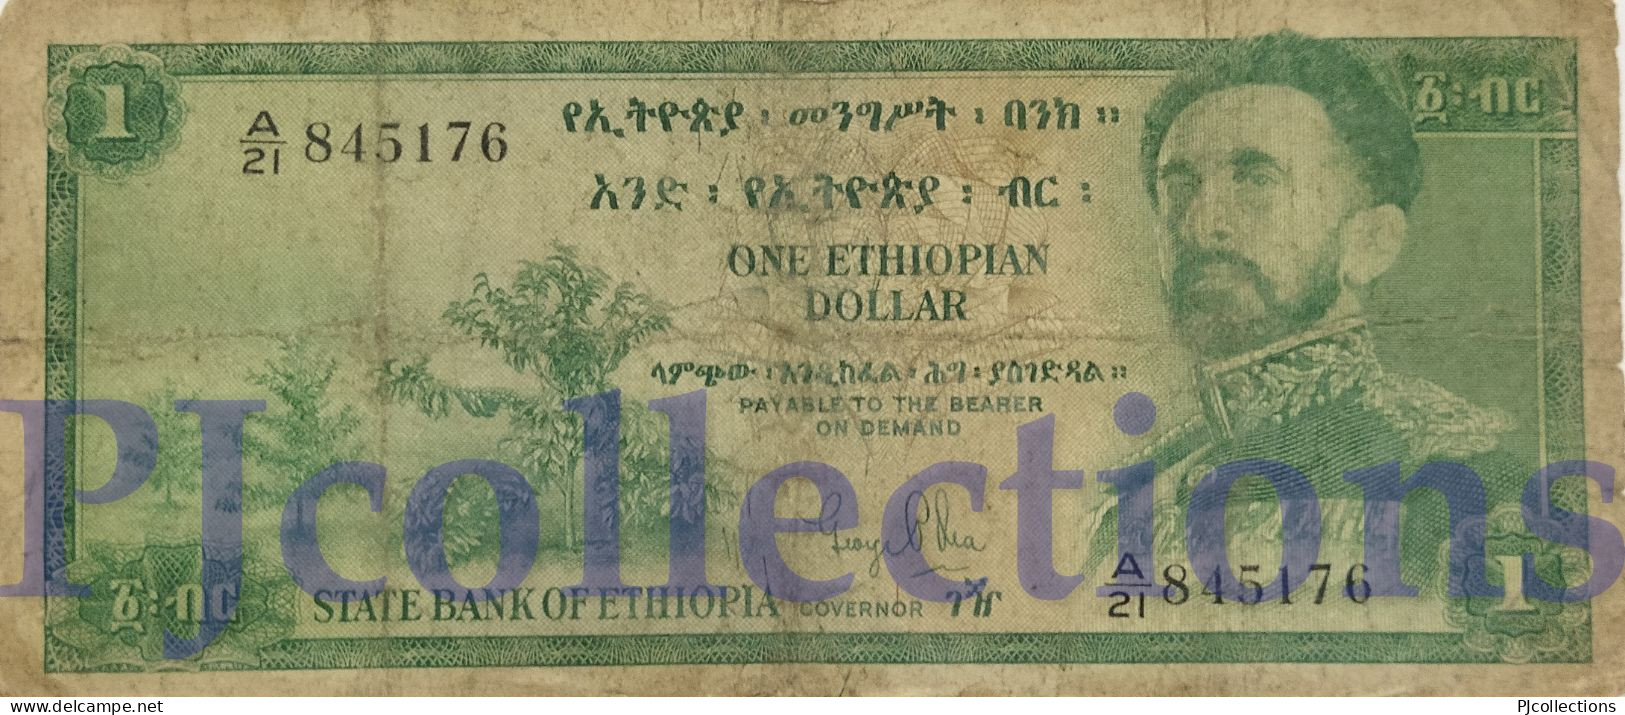 ETHIOPIA 1 DOLLAR 1961 PICK 18a FINE - Ethiopia